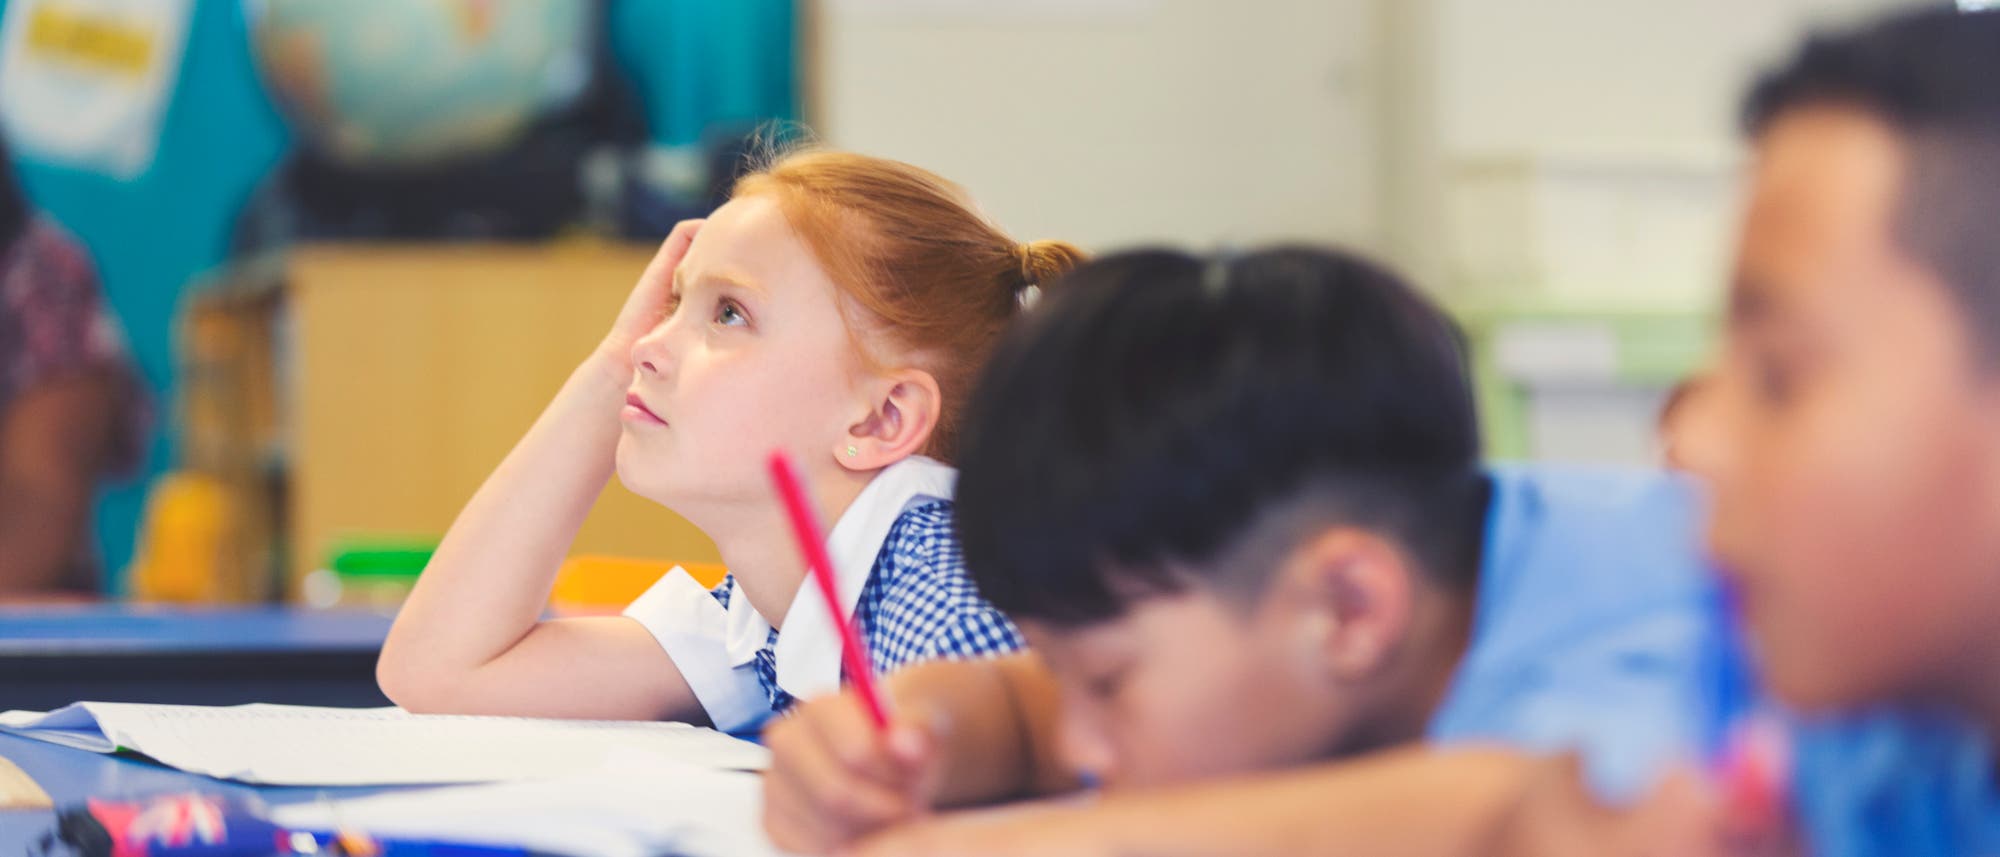 Schulkinder sitzen gelangweilt und müde in einer Klasse. (Symbolbild)